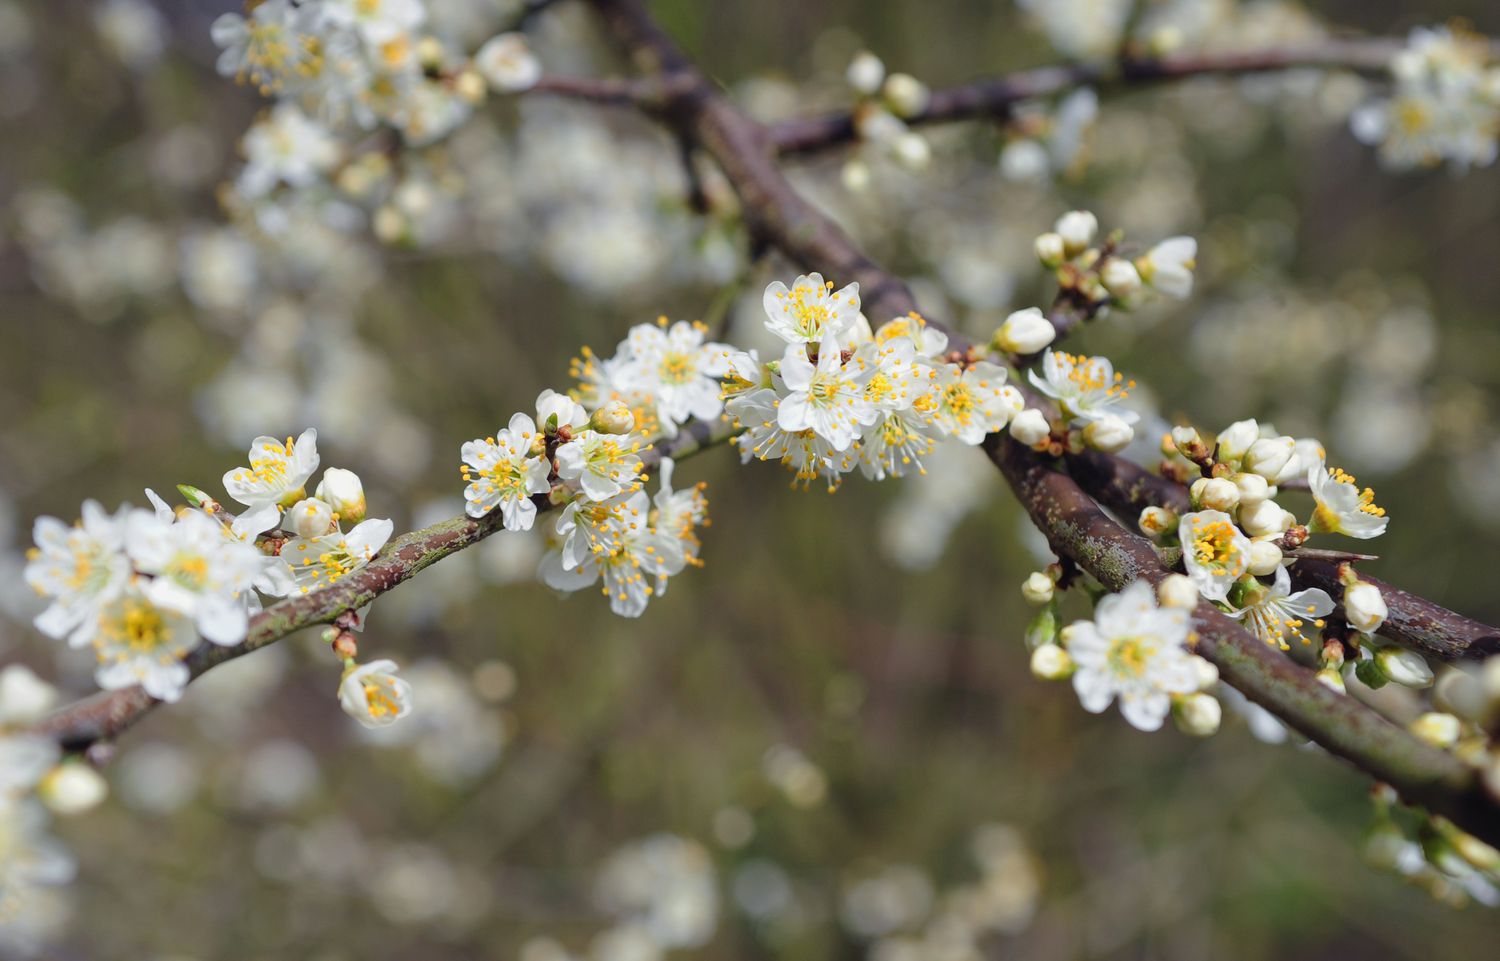 Schlehenbaumzweig mit kleinen weißen Blüten in Nahaufnahme